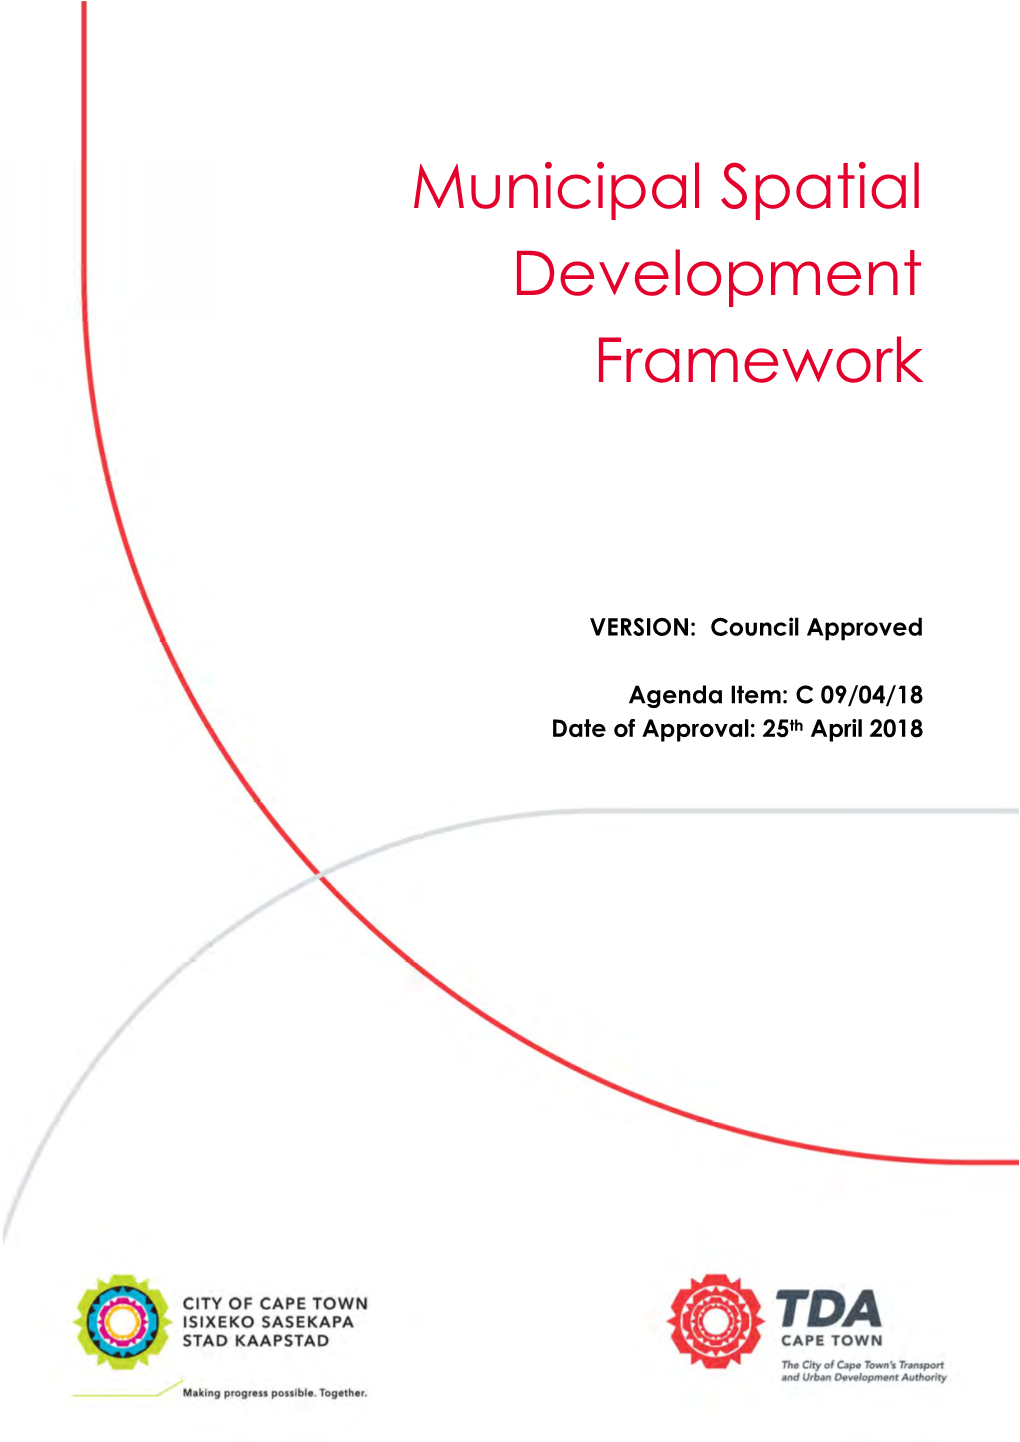 Municipal Spatial Development Framework Review 2017